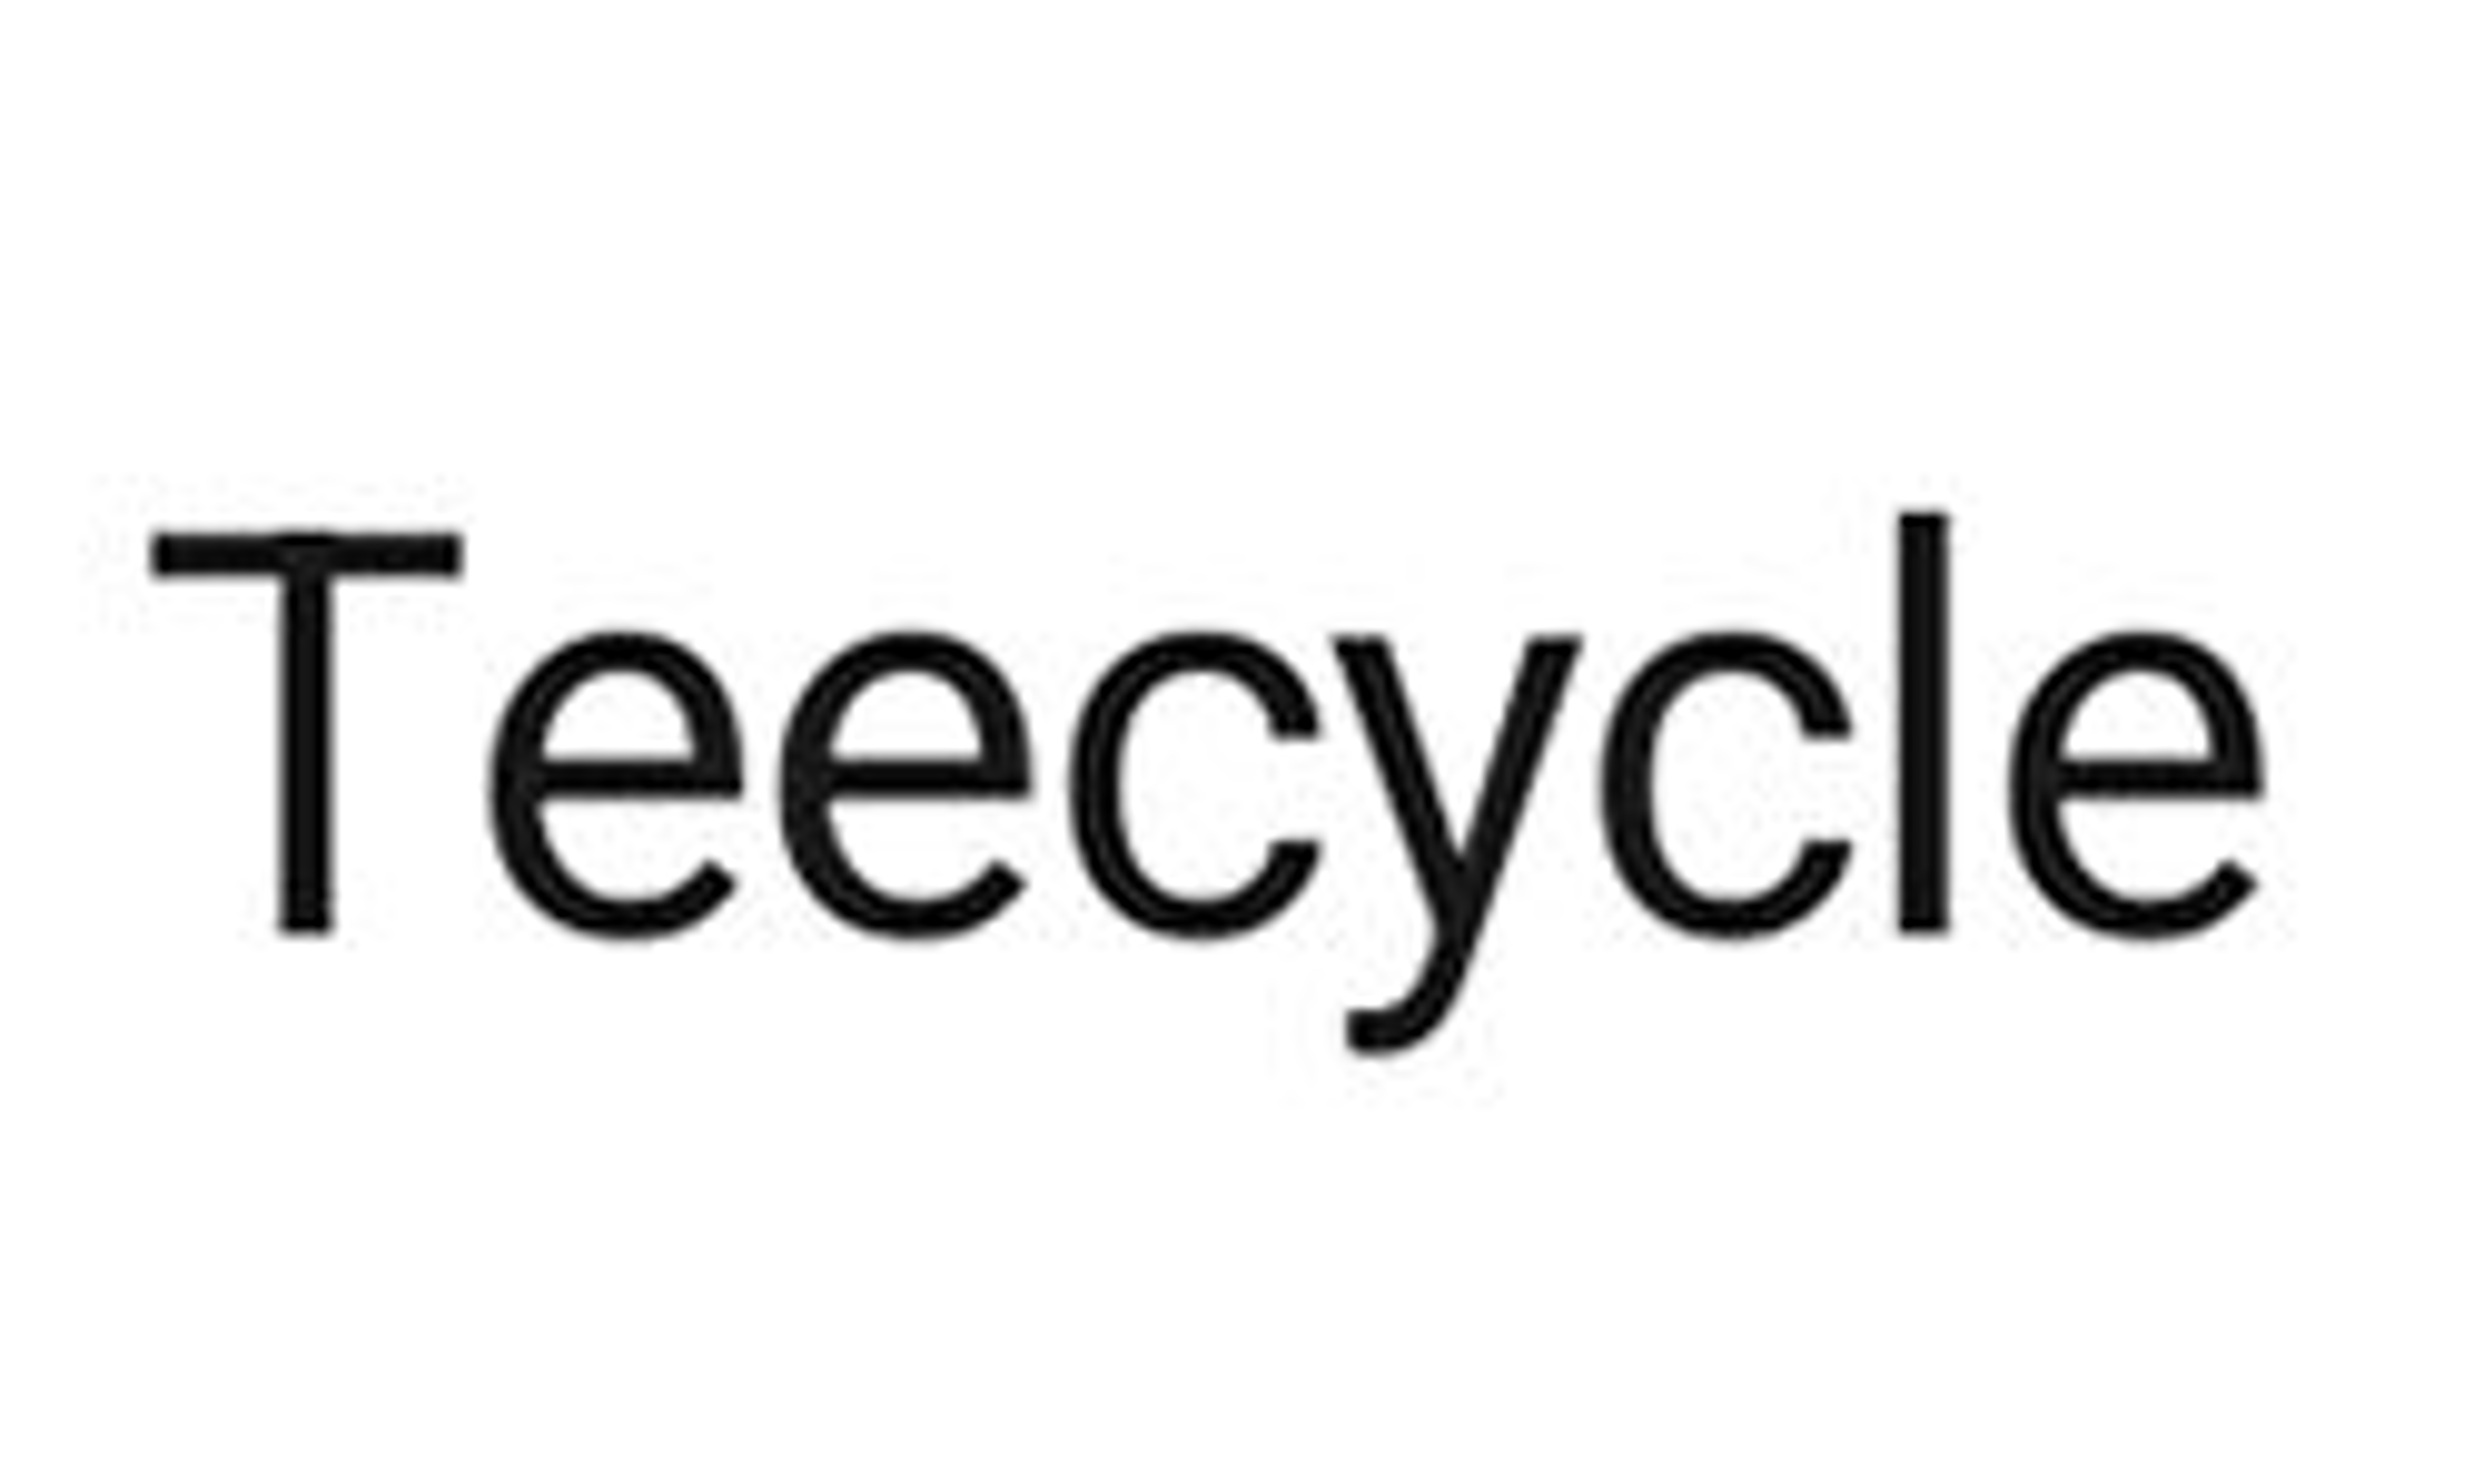 Teecycle